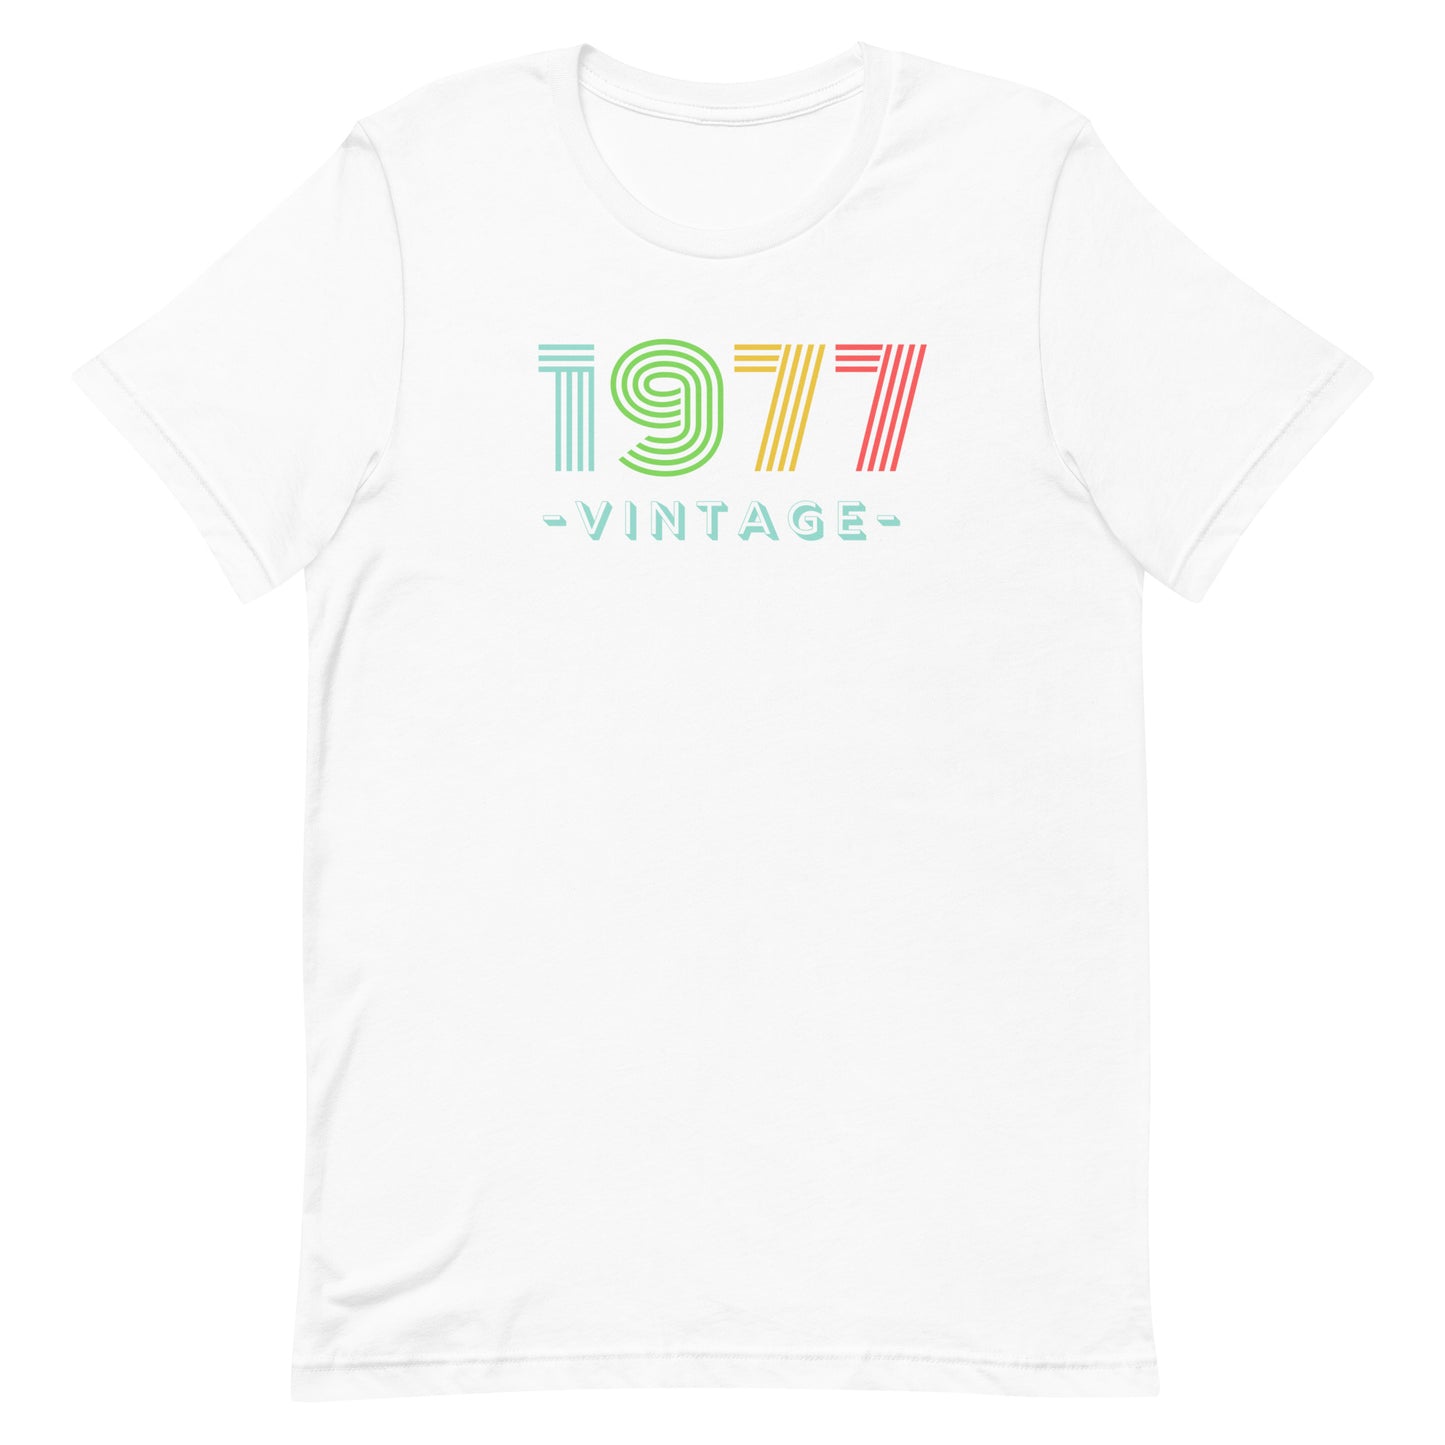 1977 Vintage Tee. Unisex T-shirt